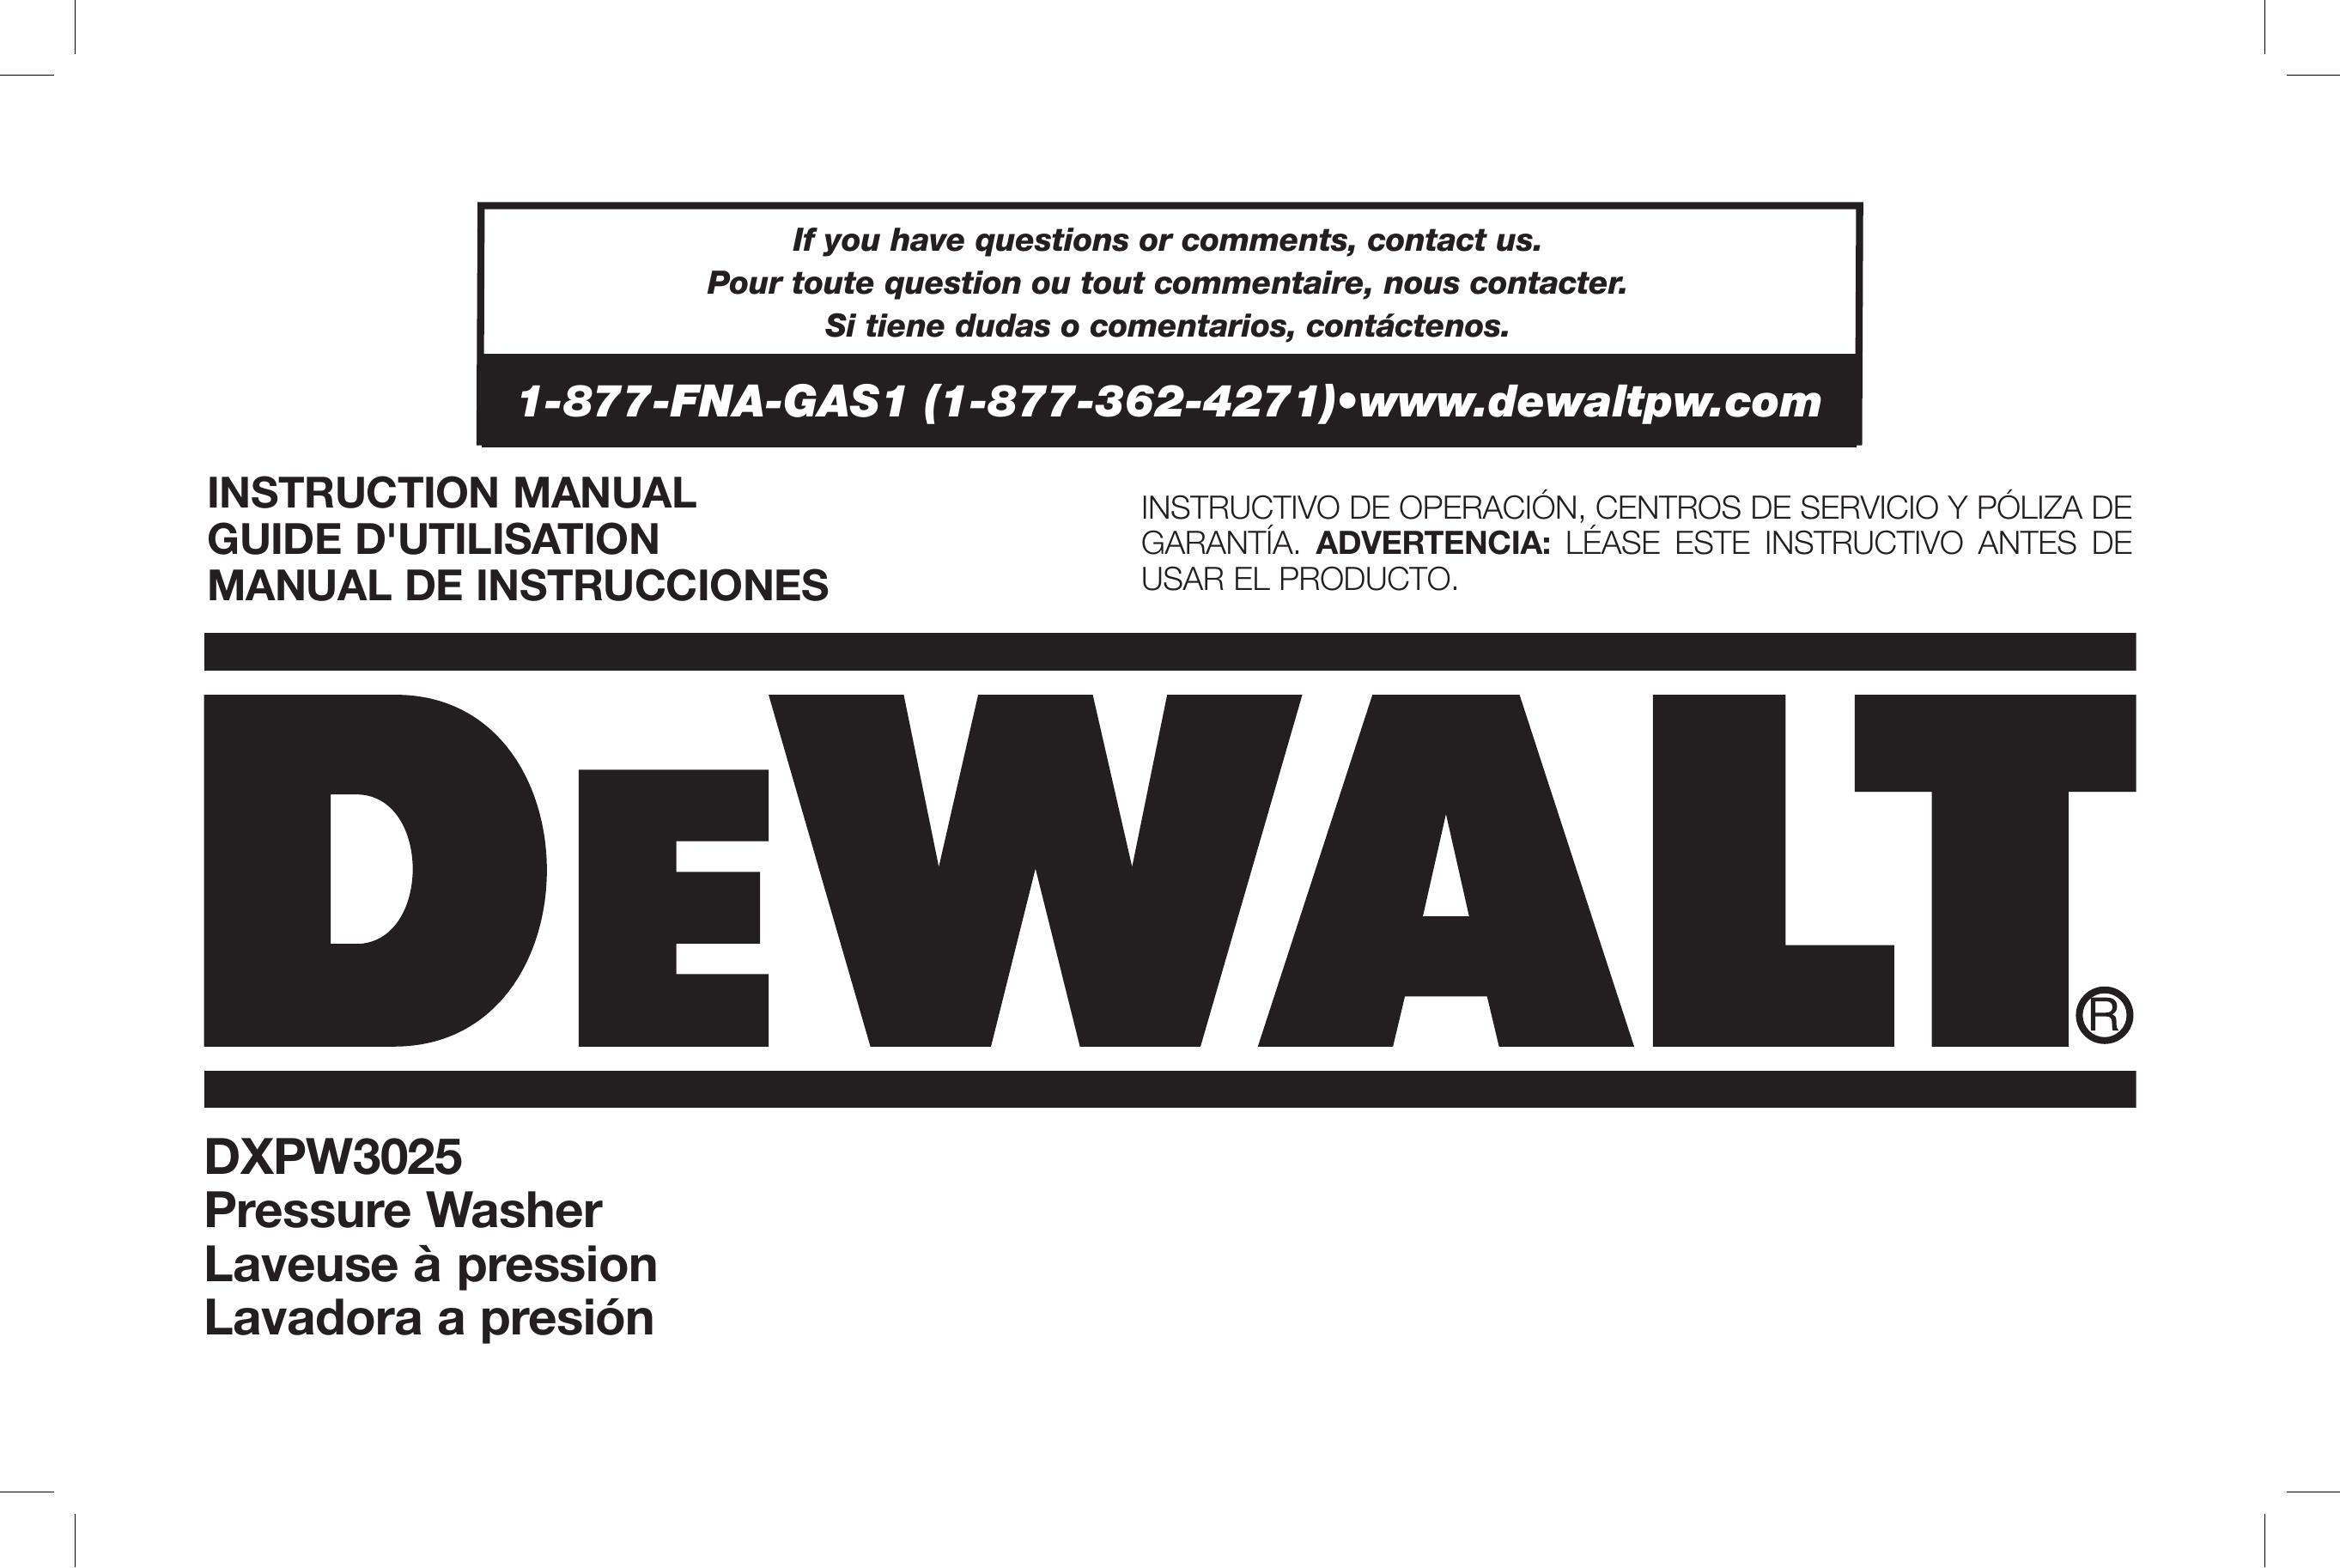 DeWalt DXPW3025 Pressure Washer User Manual